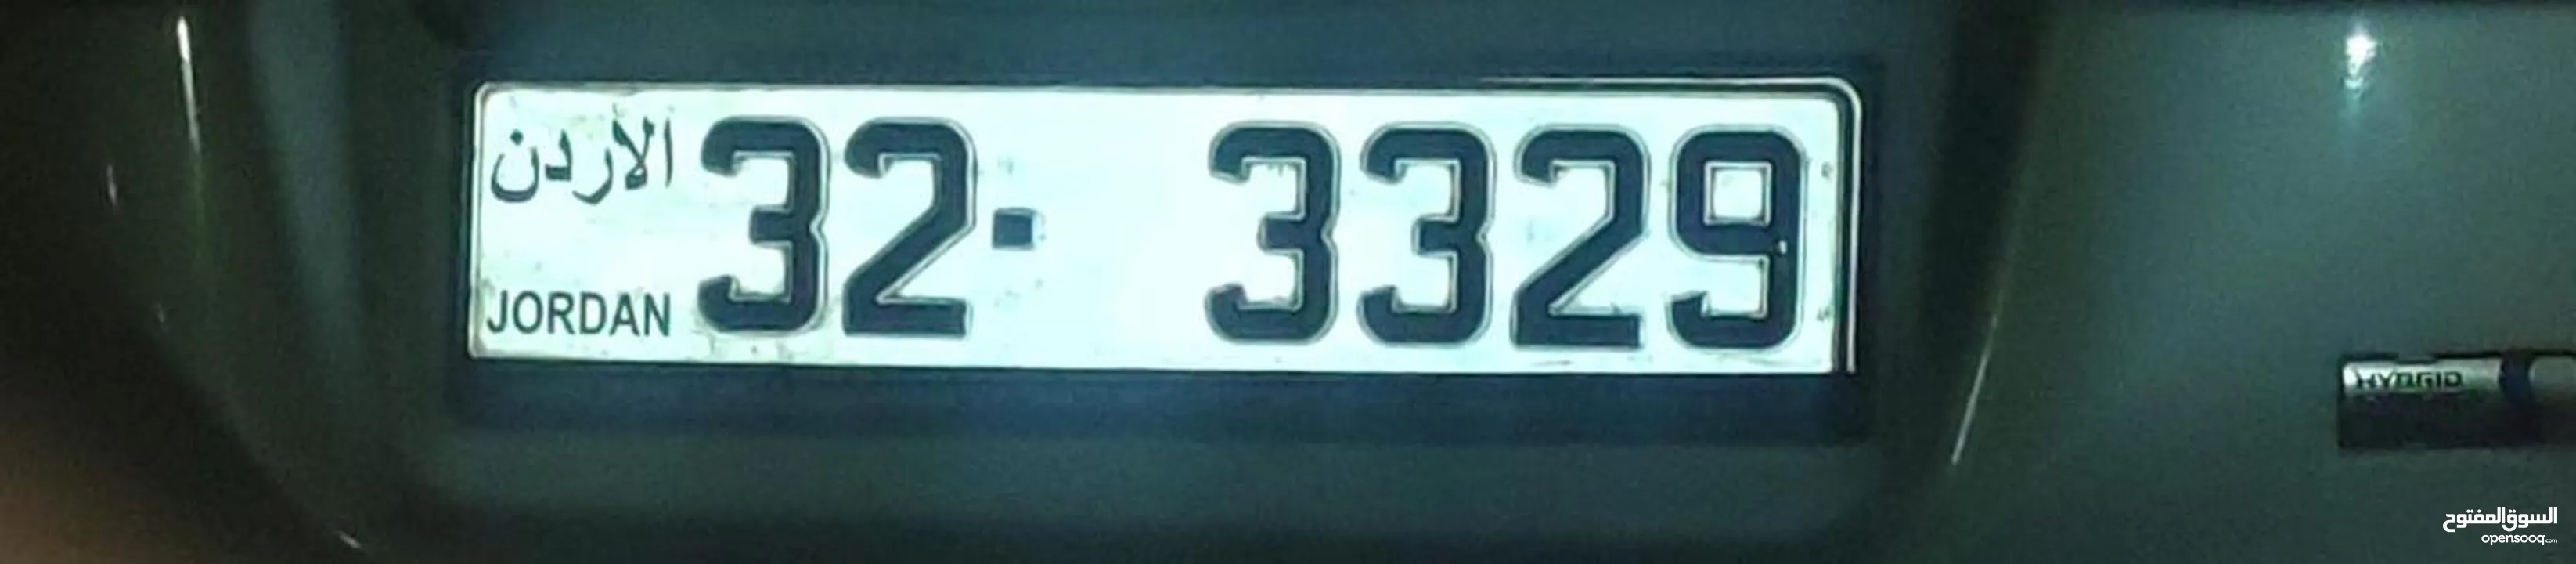 رقم سيارة مميز للبيع